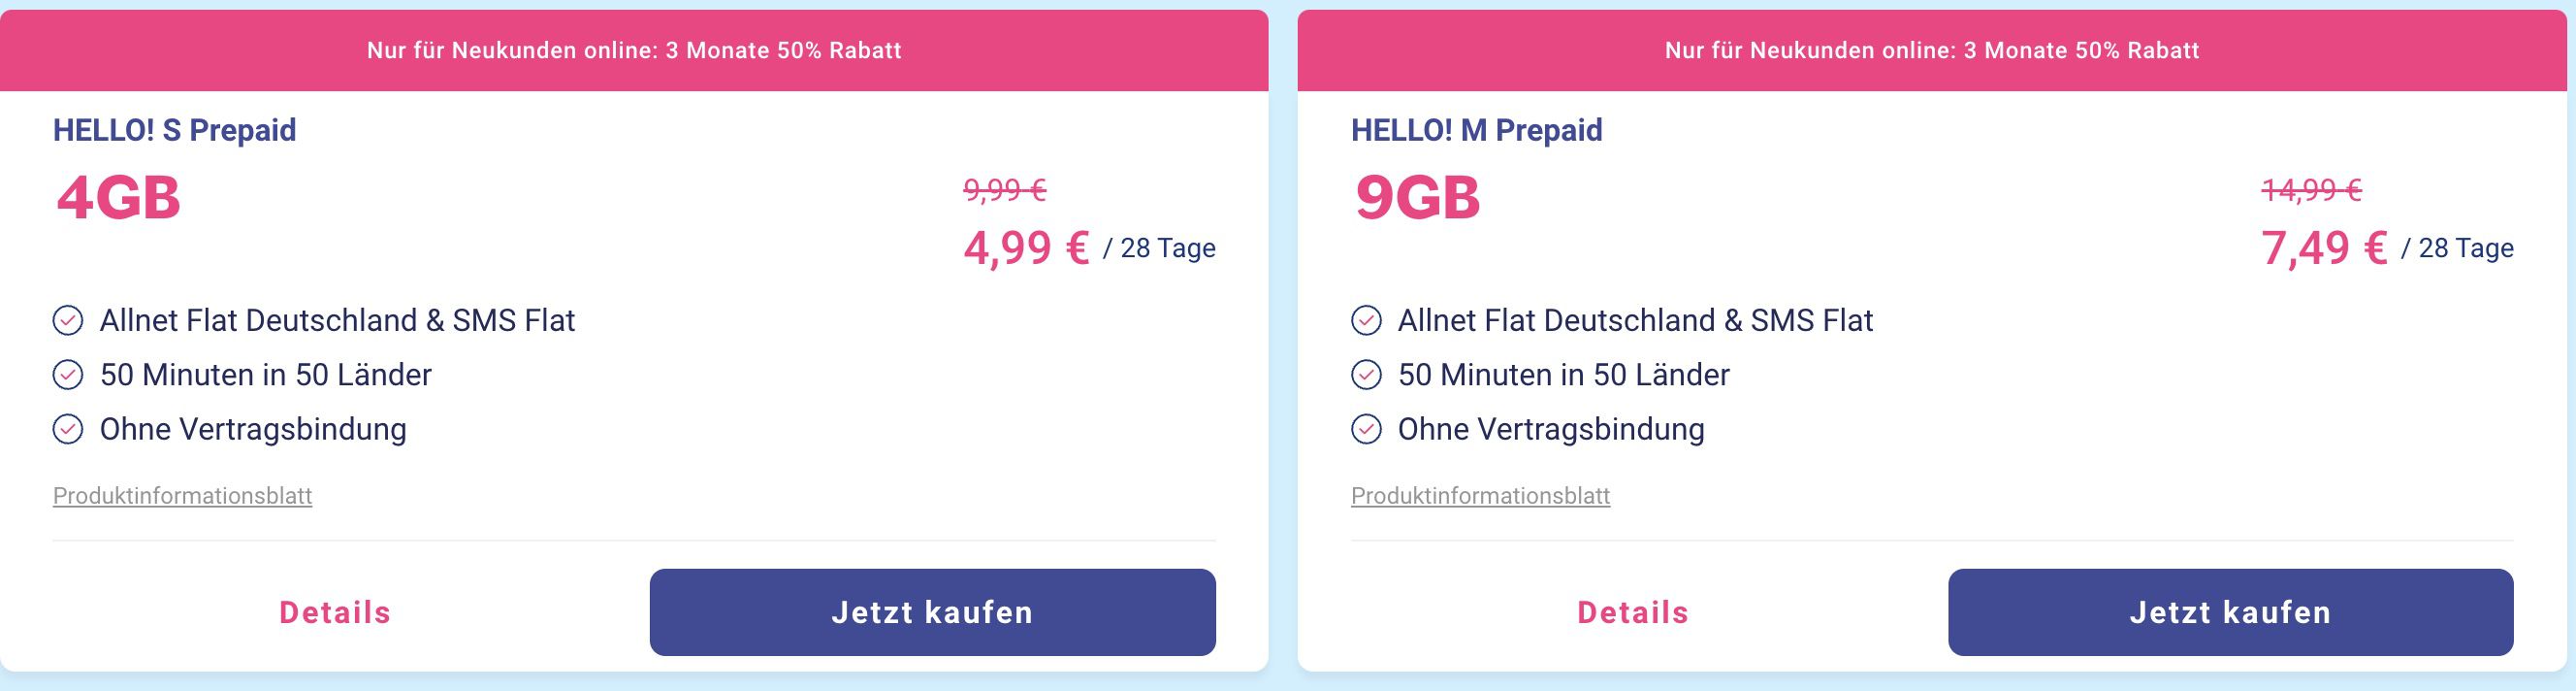 50% Rabatt auf Lebara Prepaid-Tarife 9GB im Allnet-Flat - LTE mit Netz 7,49€ z.B. o2